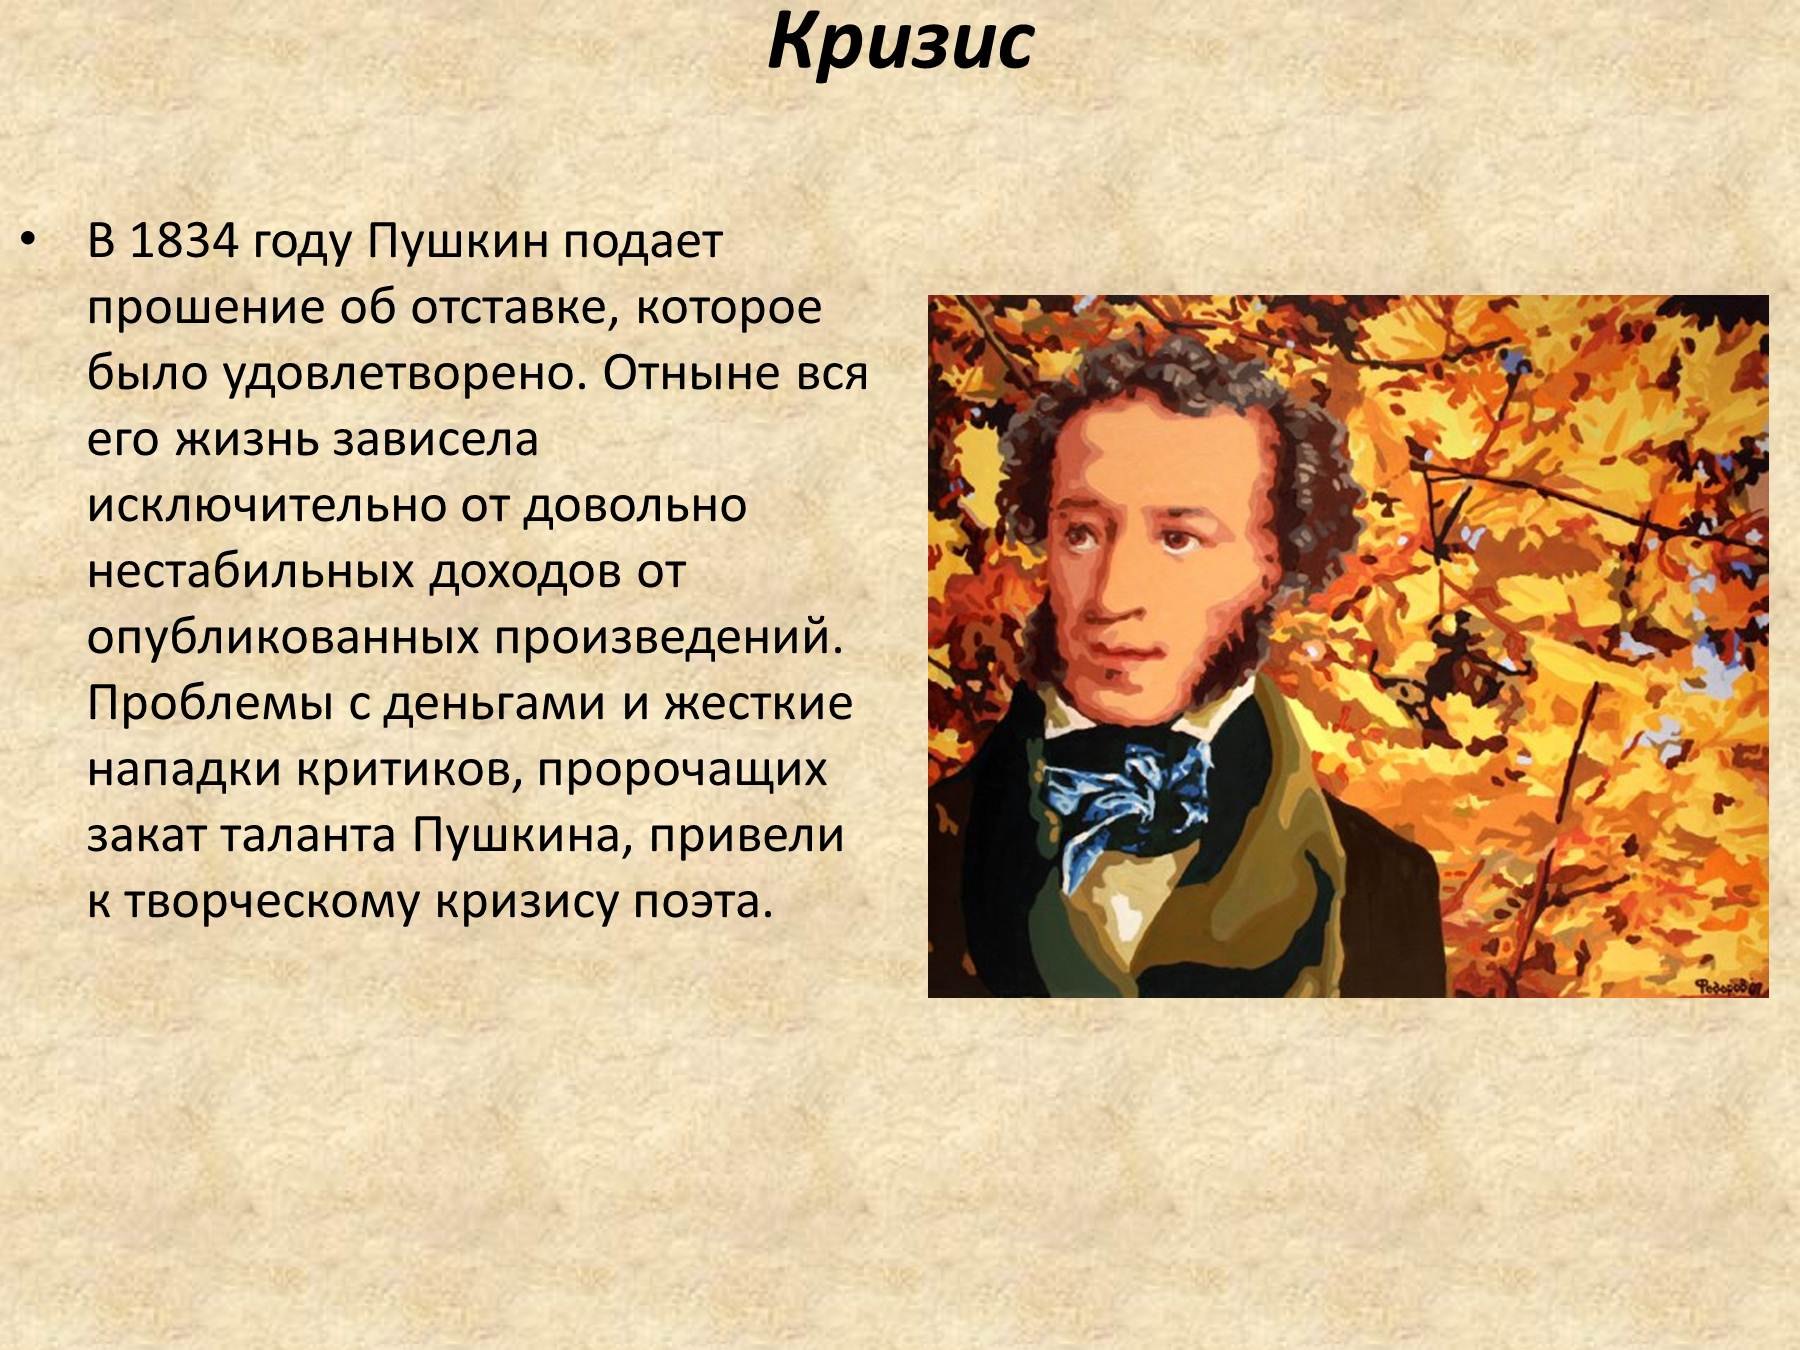 Жизнь о пушкине кратко. Сообщение о Пушкине. Пушкин биография. Презентация о Пушкине.